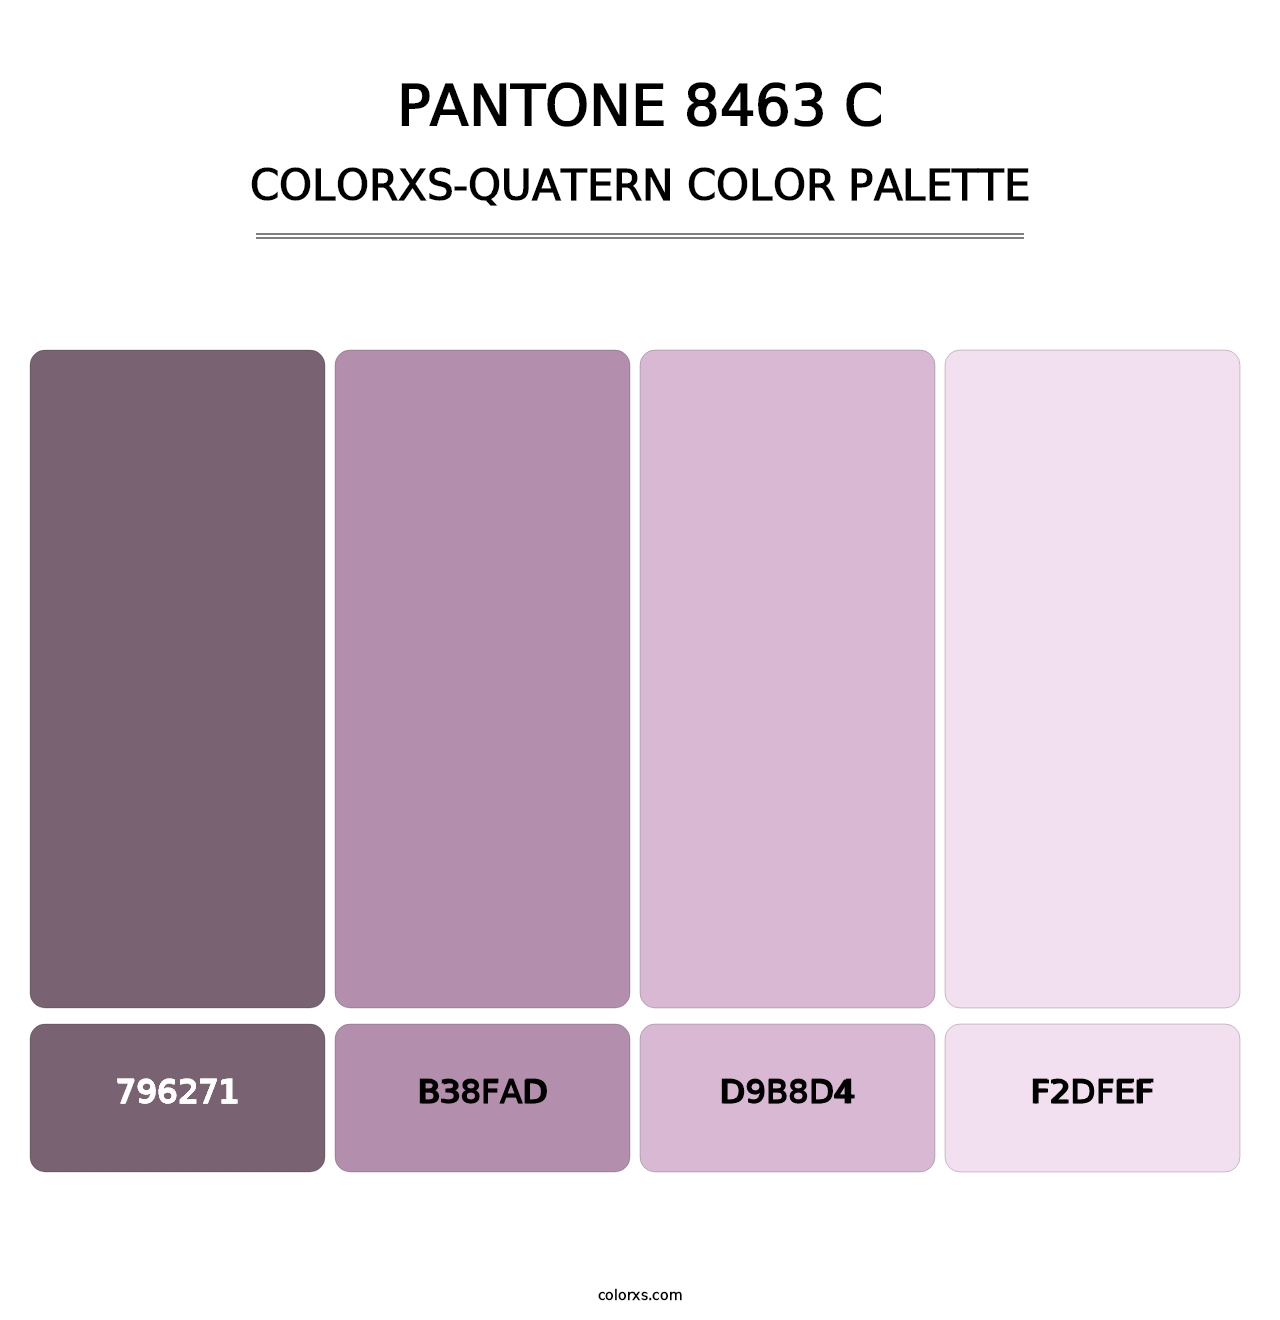 PANTONE 8463 C - Colorxs Quatern Palette